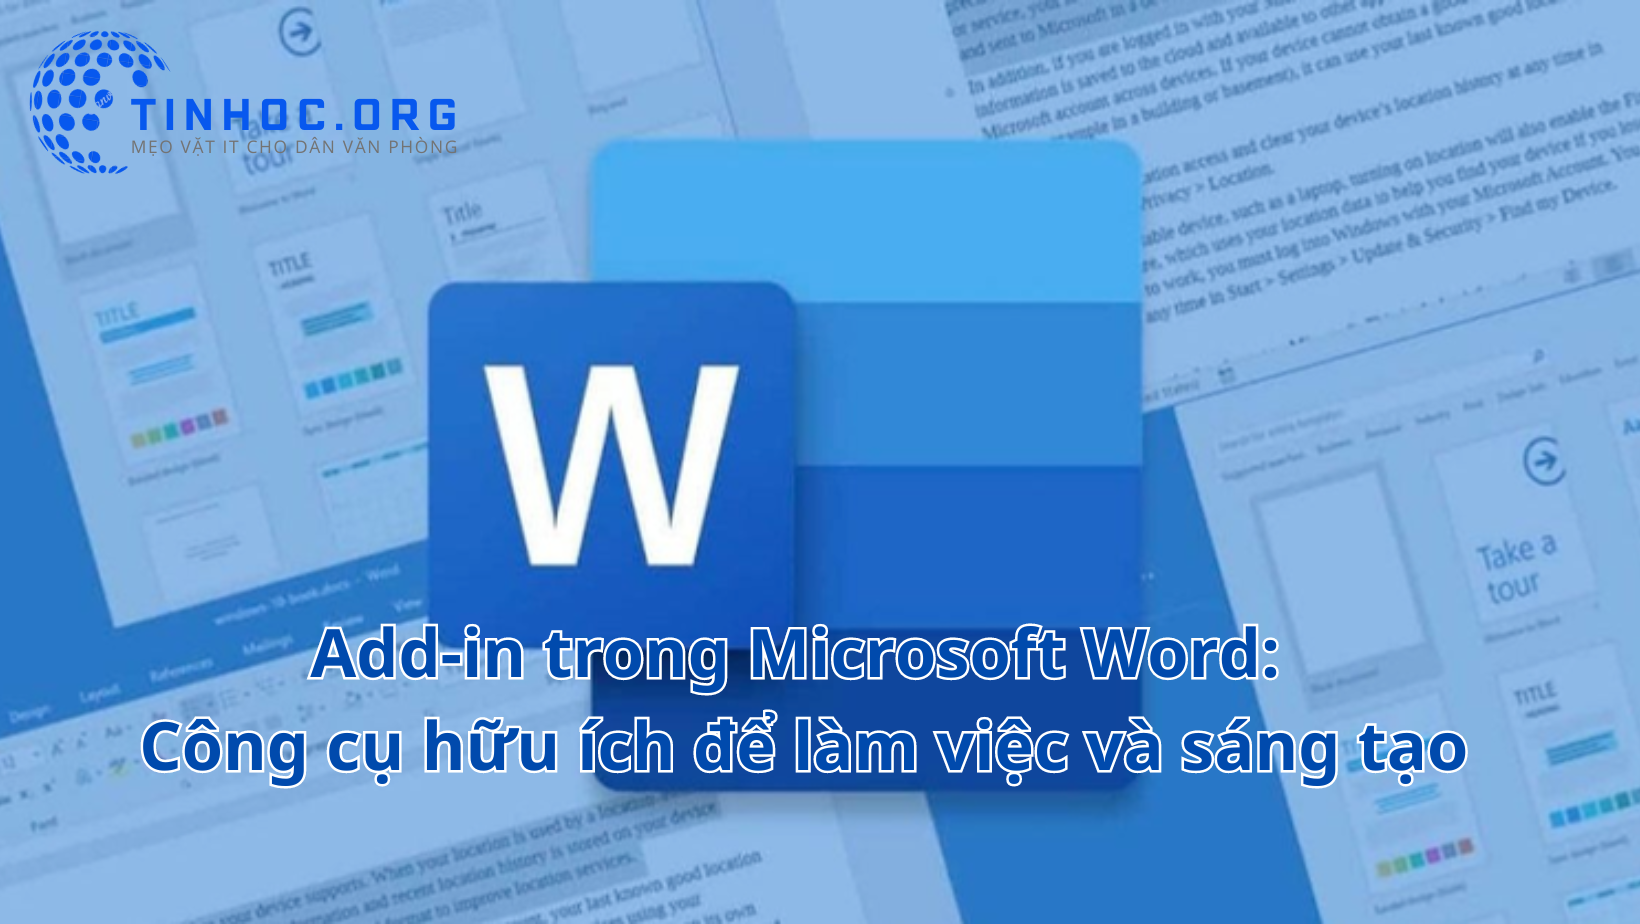 Add-in là một cách tuyệt vời để thêm các tính năng và khả năng mới cho Microsoft Word, giúp bạn làm việc hiệu quả hơn và tạo ra các tài liệu ấn tượng hơn.